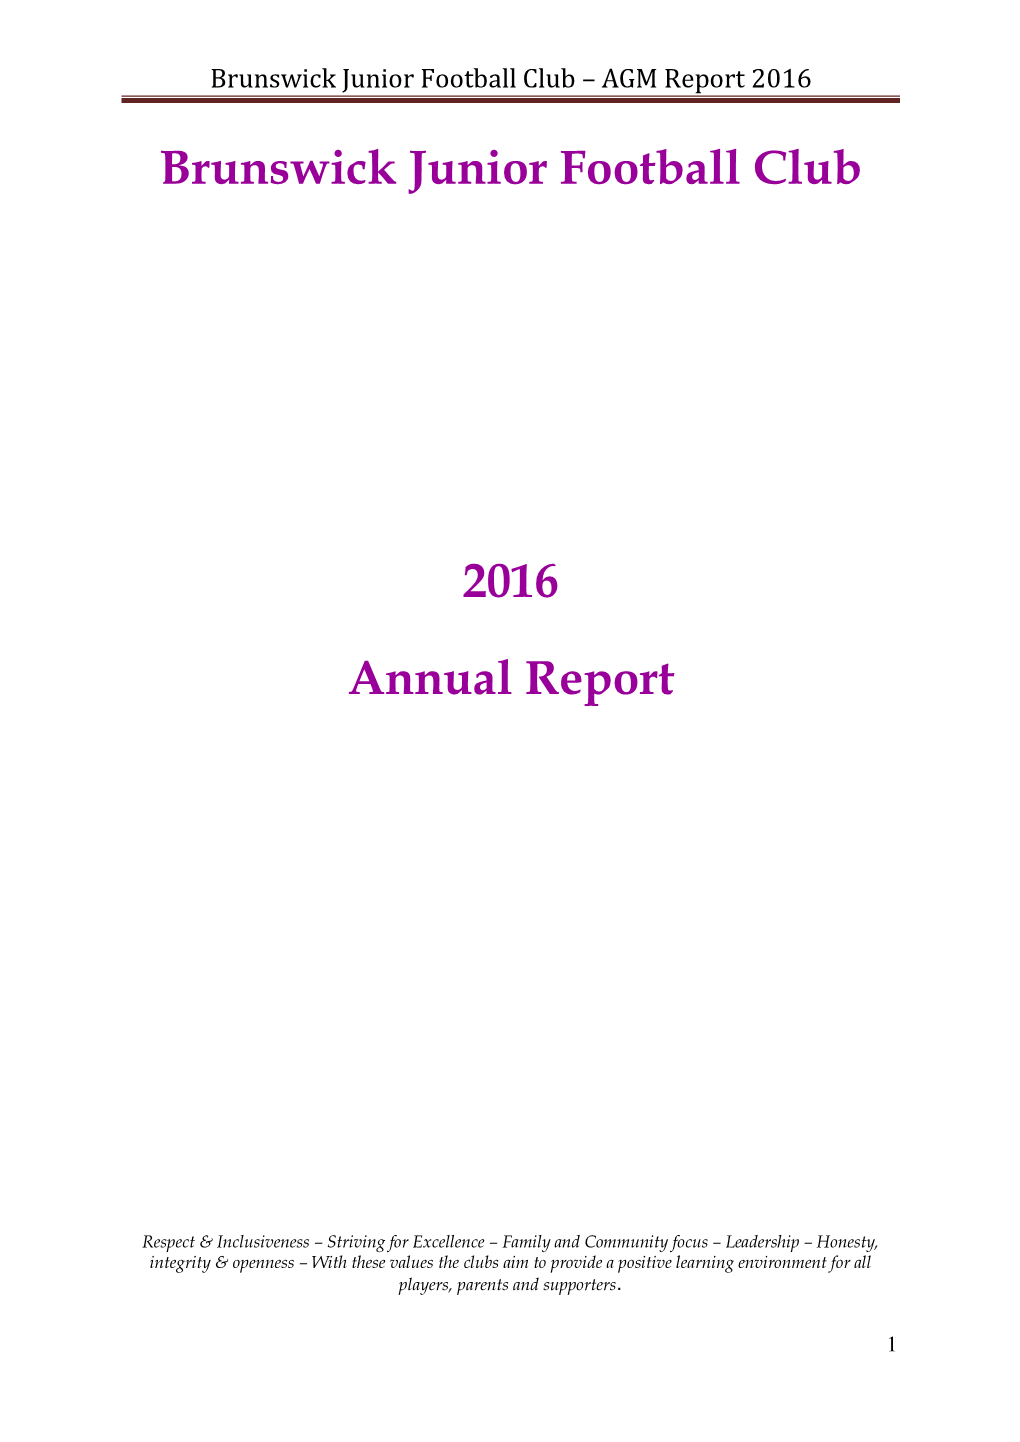 AGM Report 2016